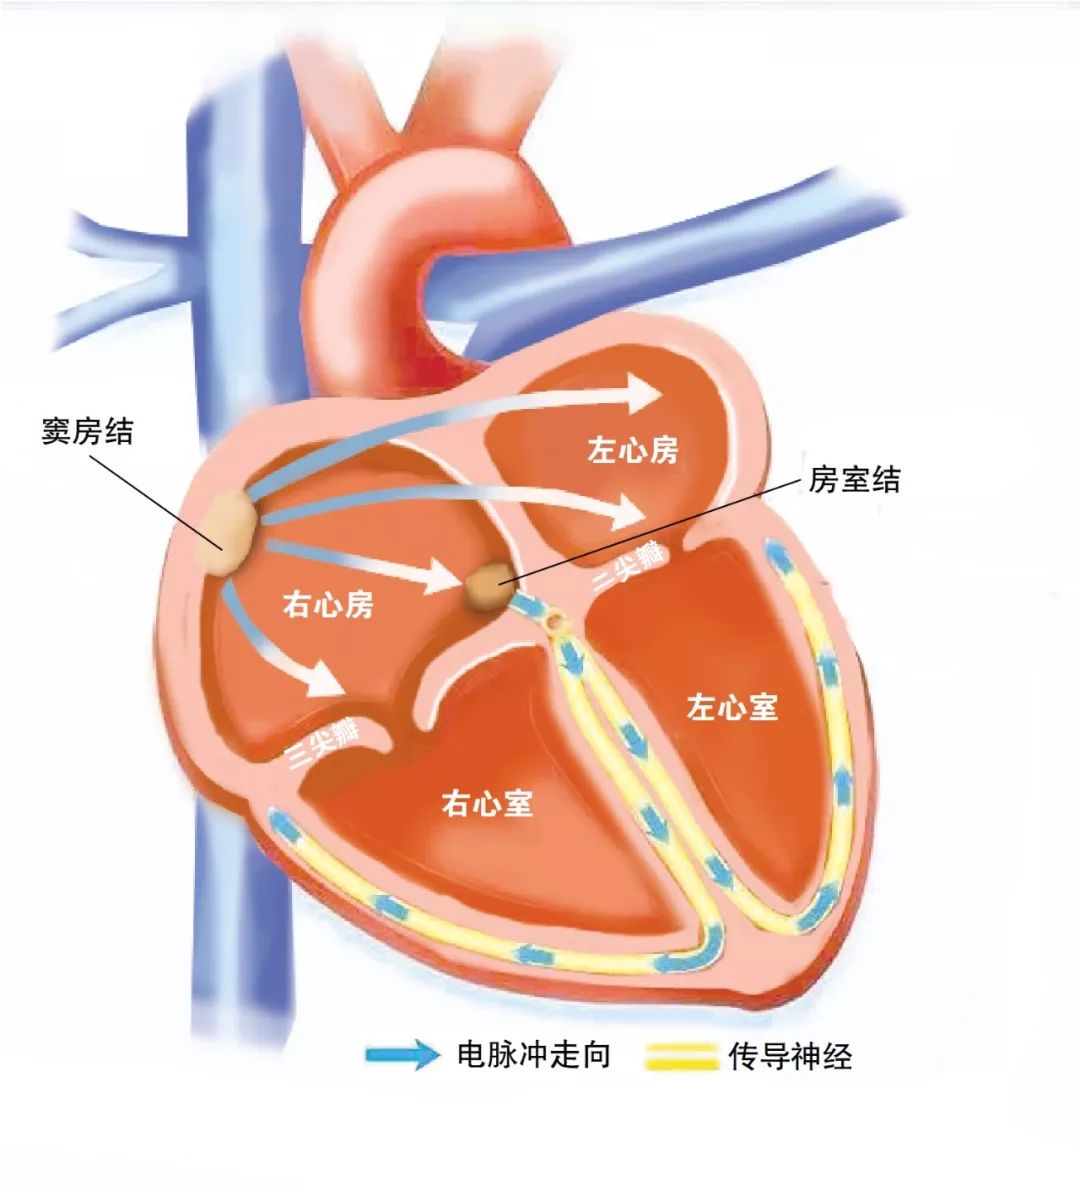 大家先来看一下心脏的结构图.